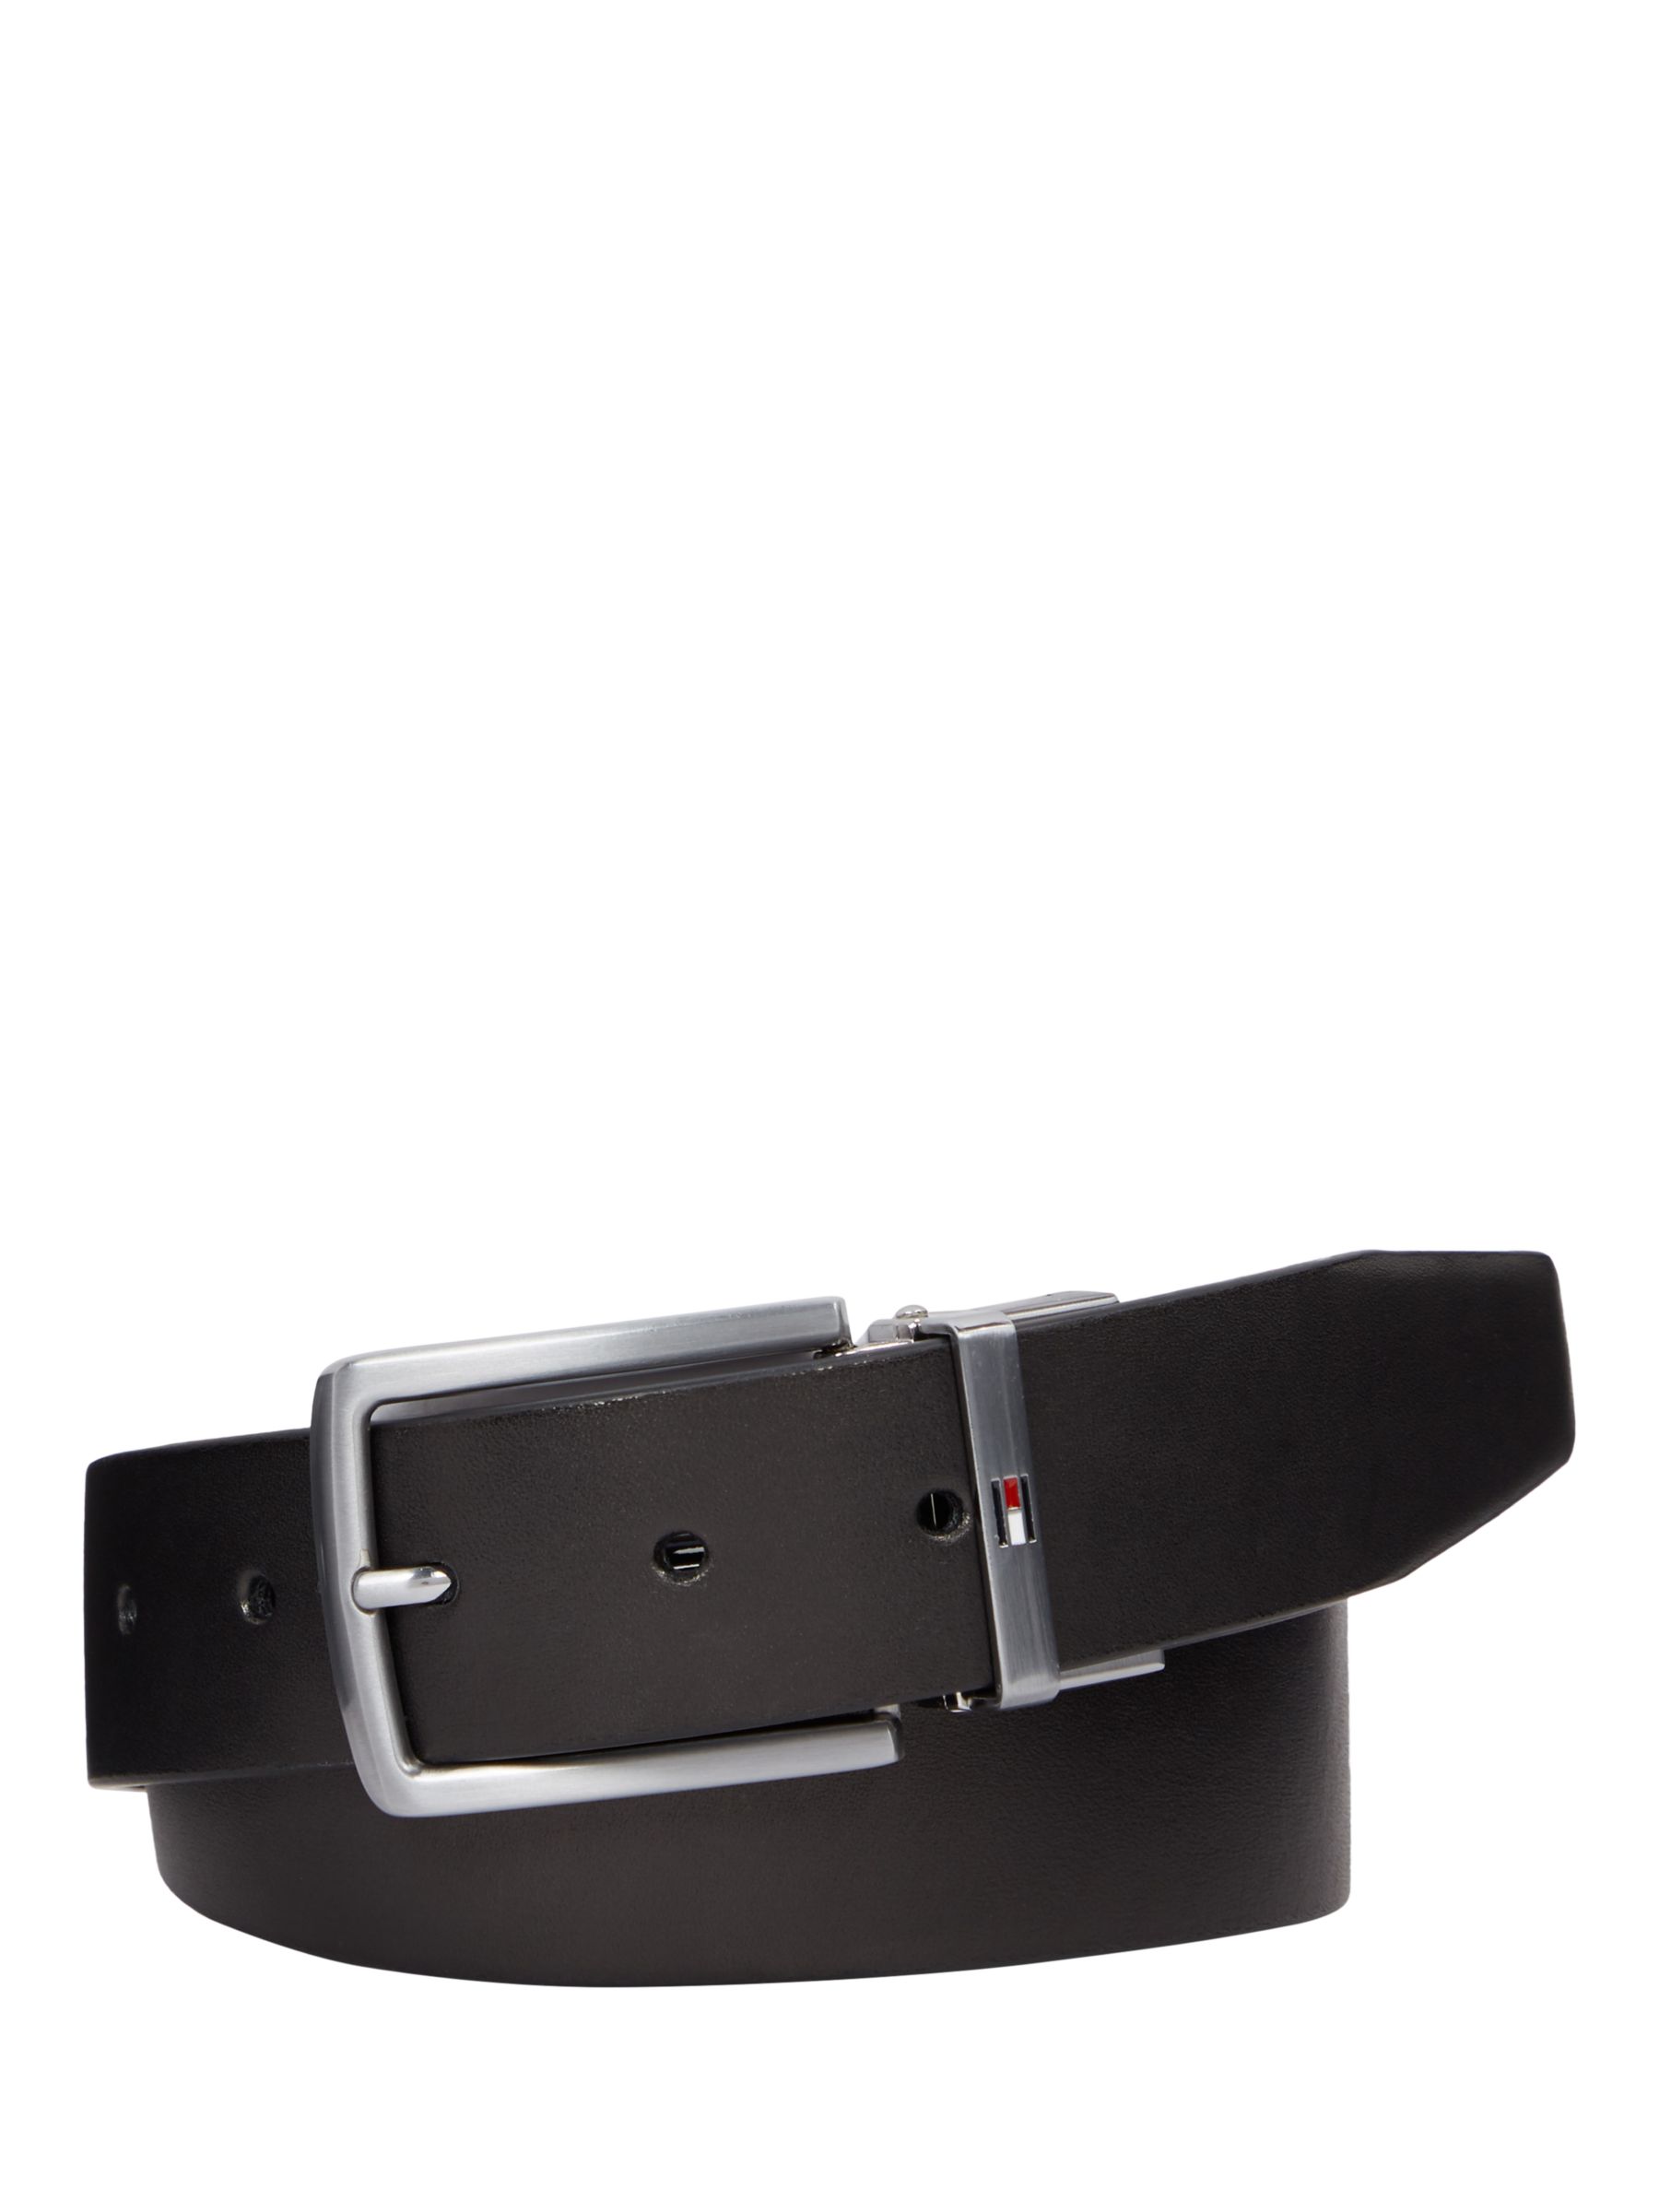 Buy Tommy Hilfiger Denton Reversible Leather Belt, Black/Corporate Online at johnlewis.com